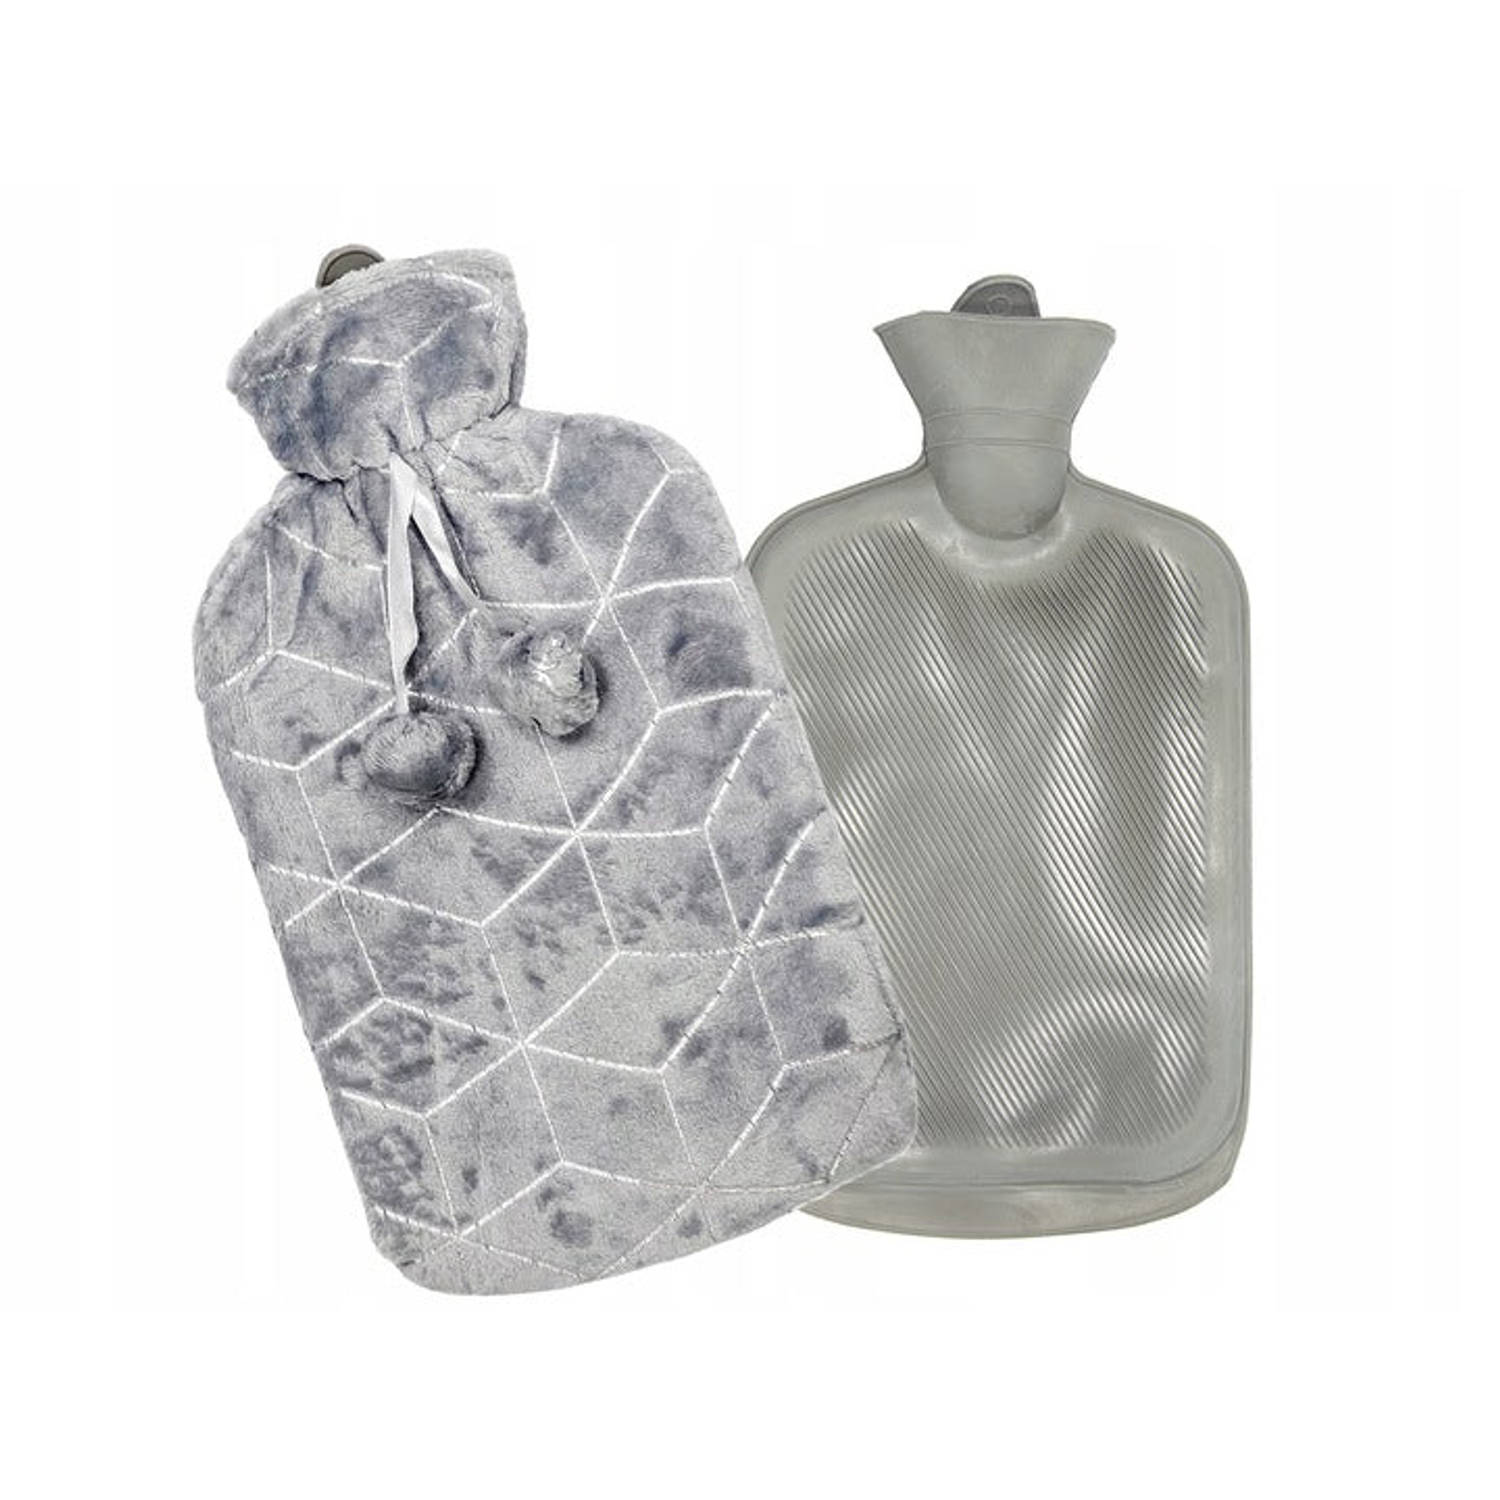 Tragar Cube warmwaterkruik kruik polyester hoes 2 liter 34 x 20 x 2 cm grijs / zilver | Blokker